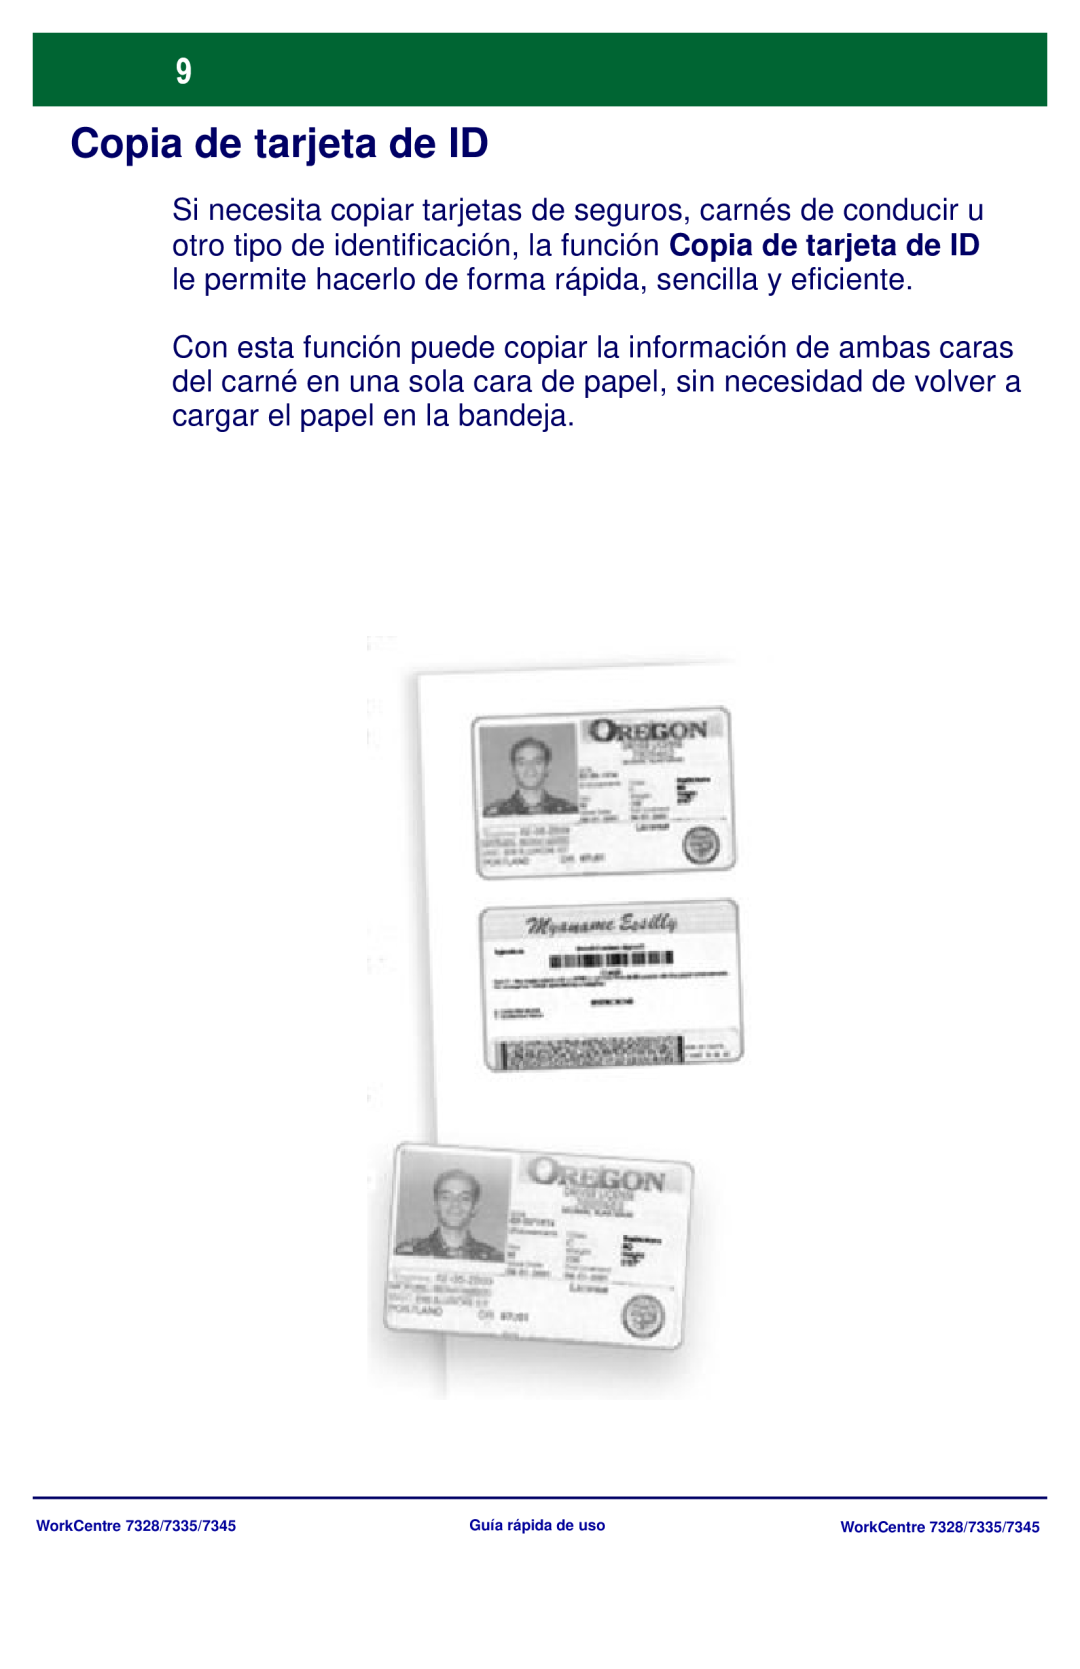 Xerox 7345, 7335, 7328 manual Copia de tarjeta de ID 